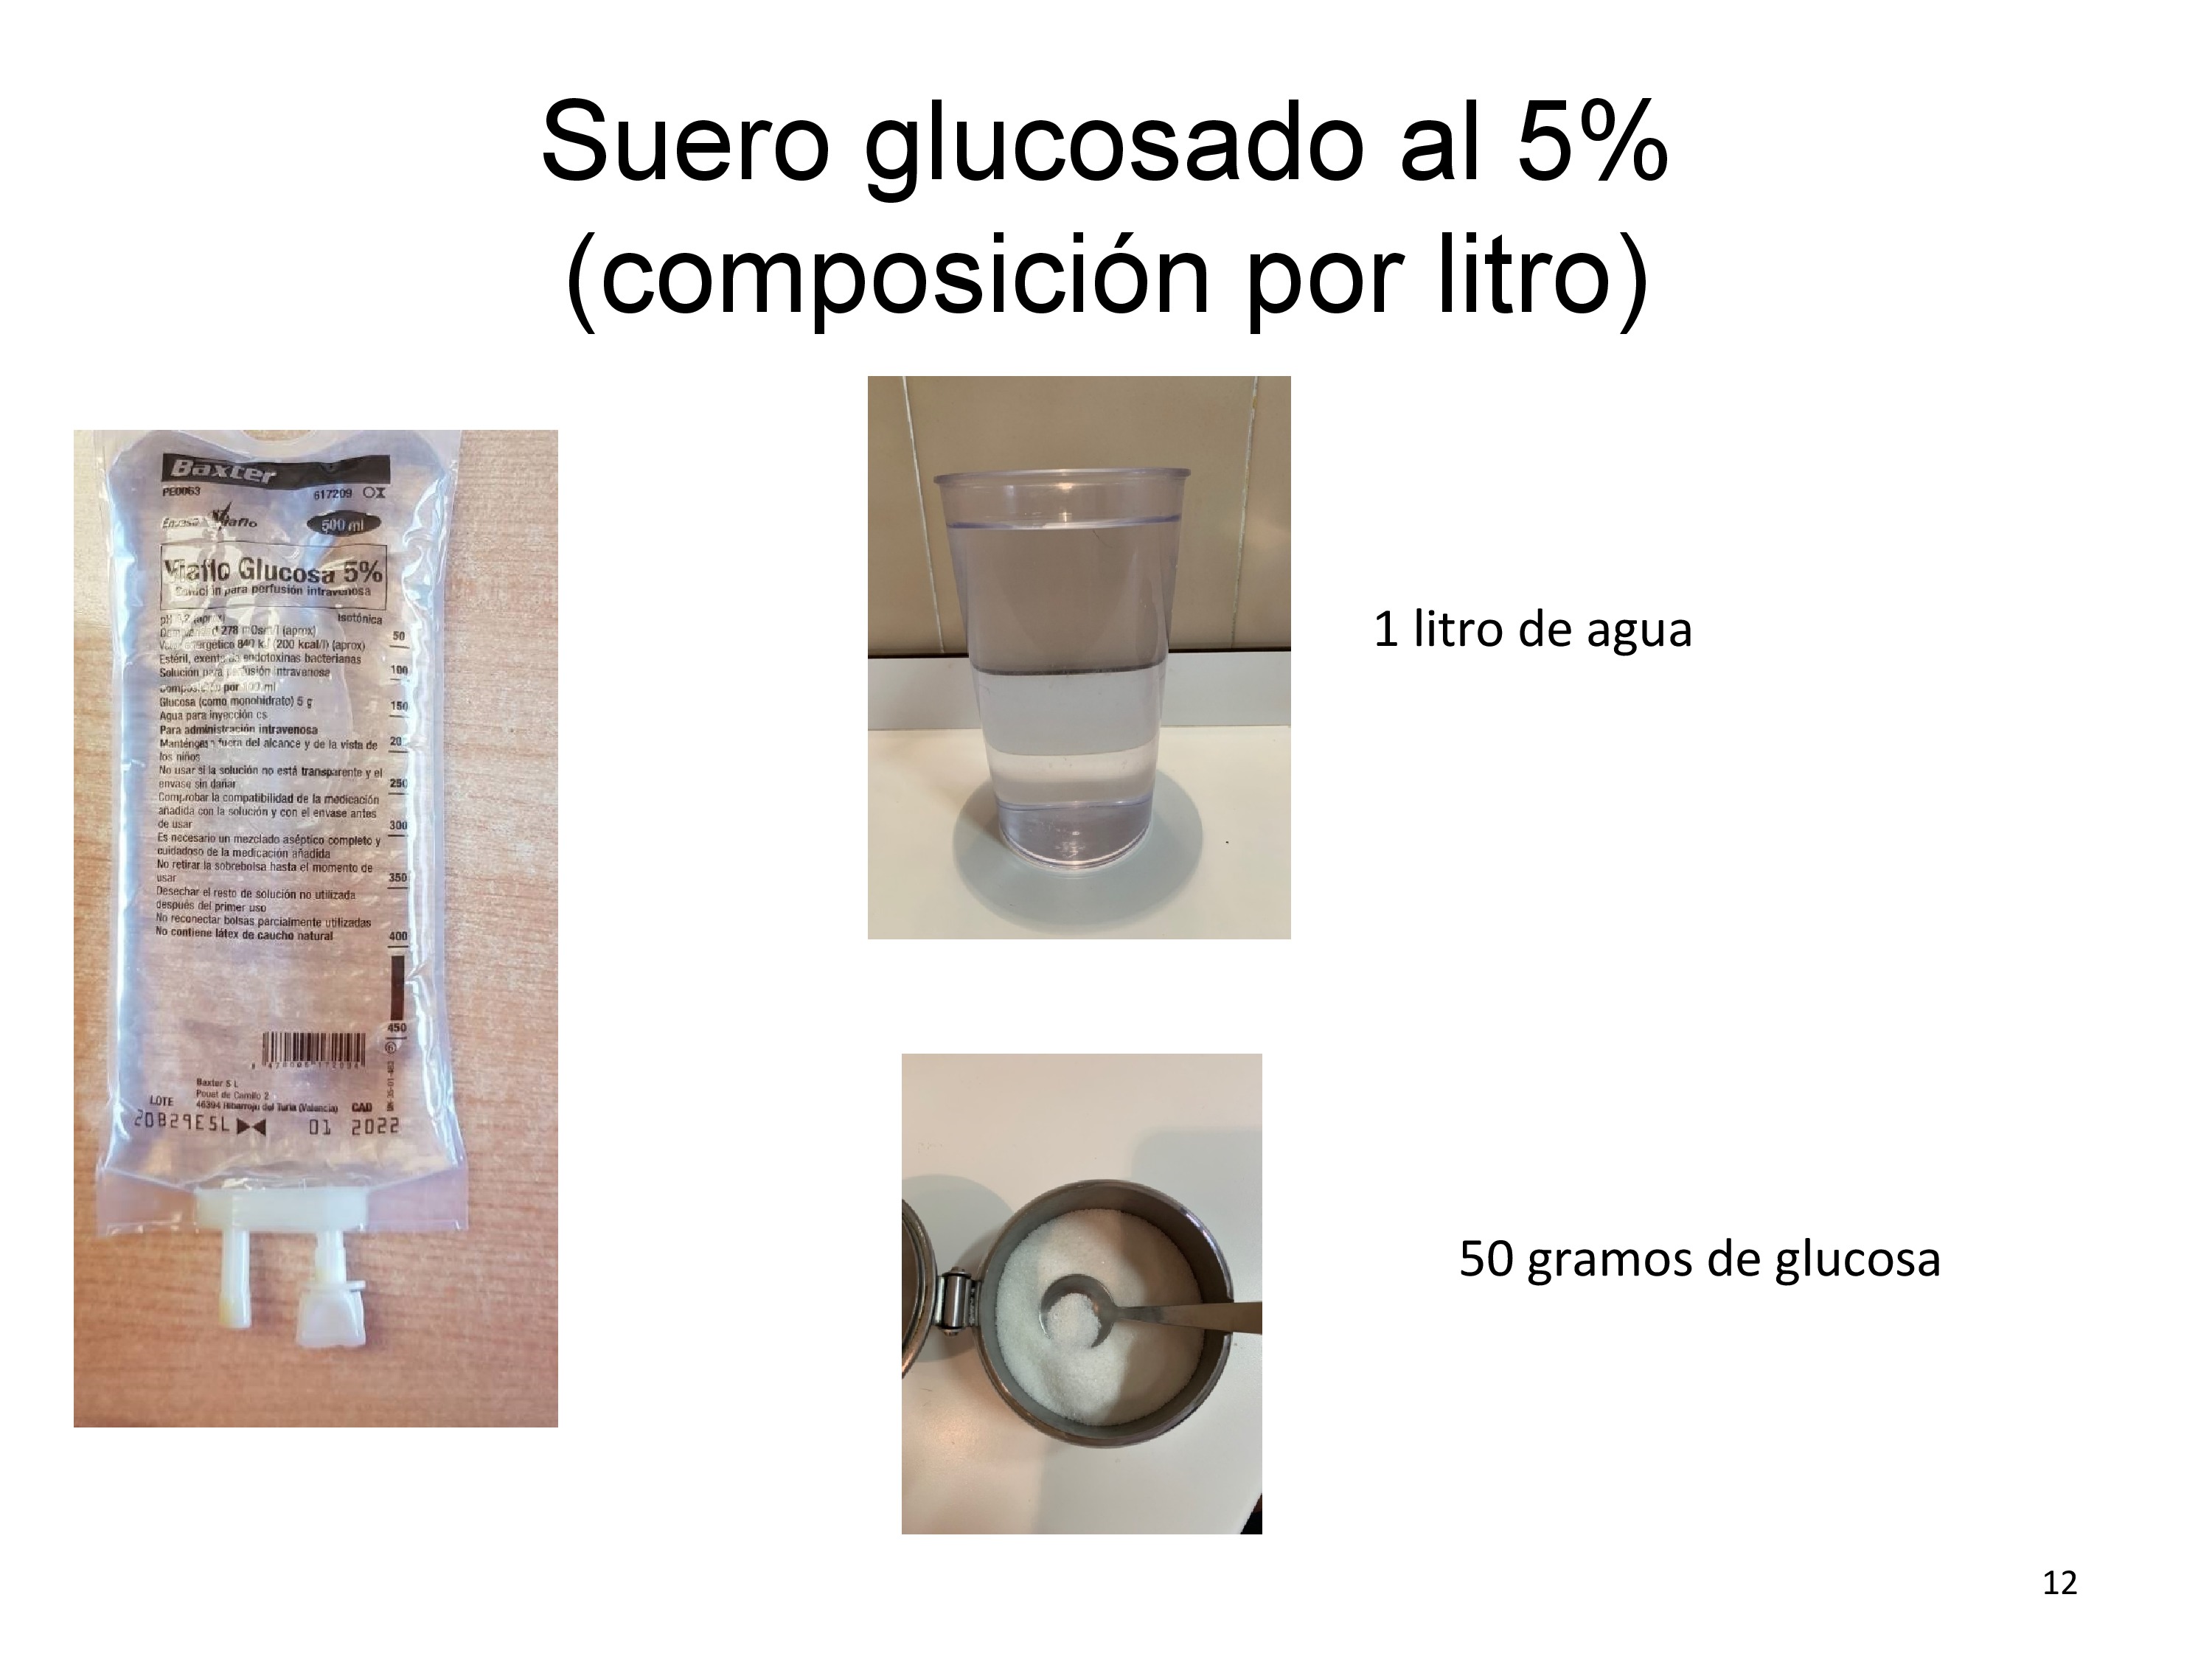 De un modo gráfico se señala la composición del suero glucosado al 5% 